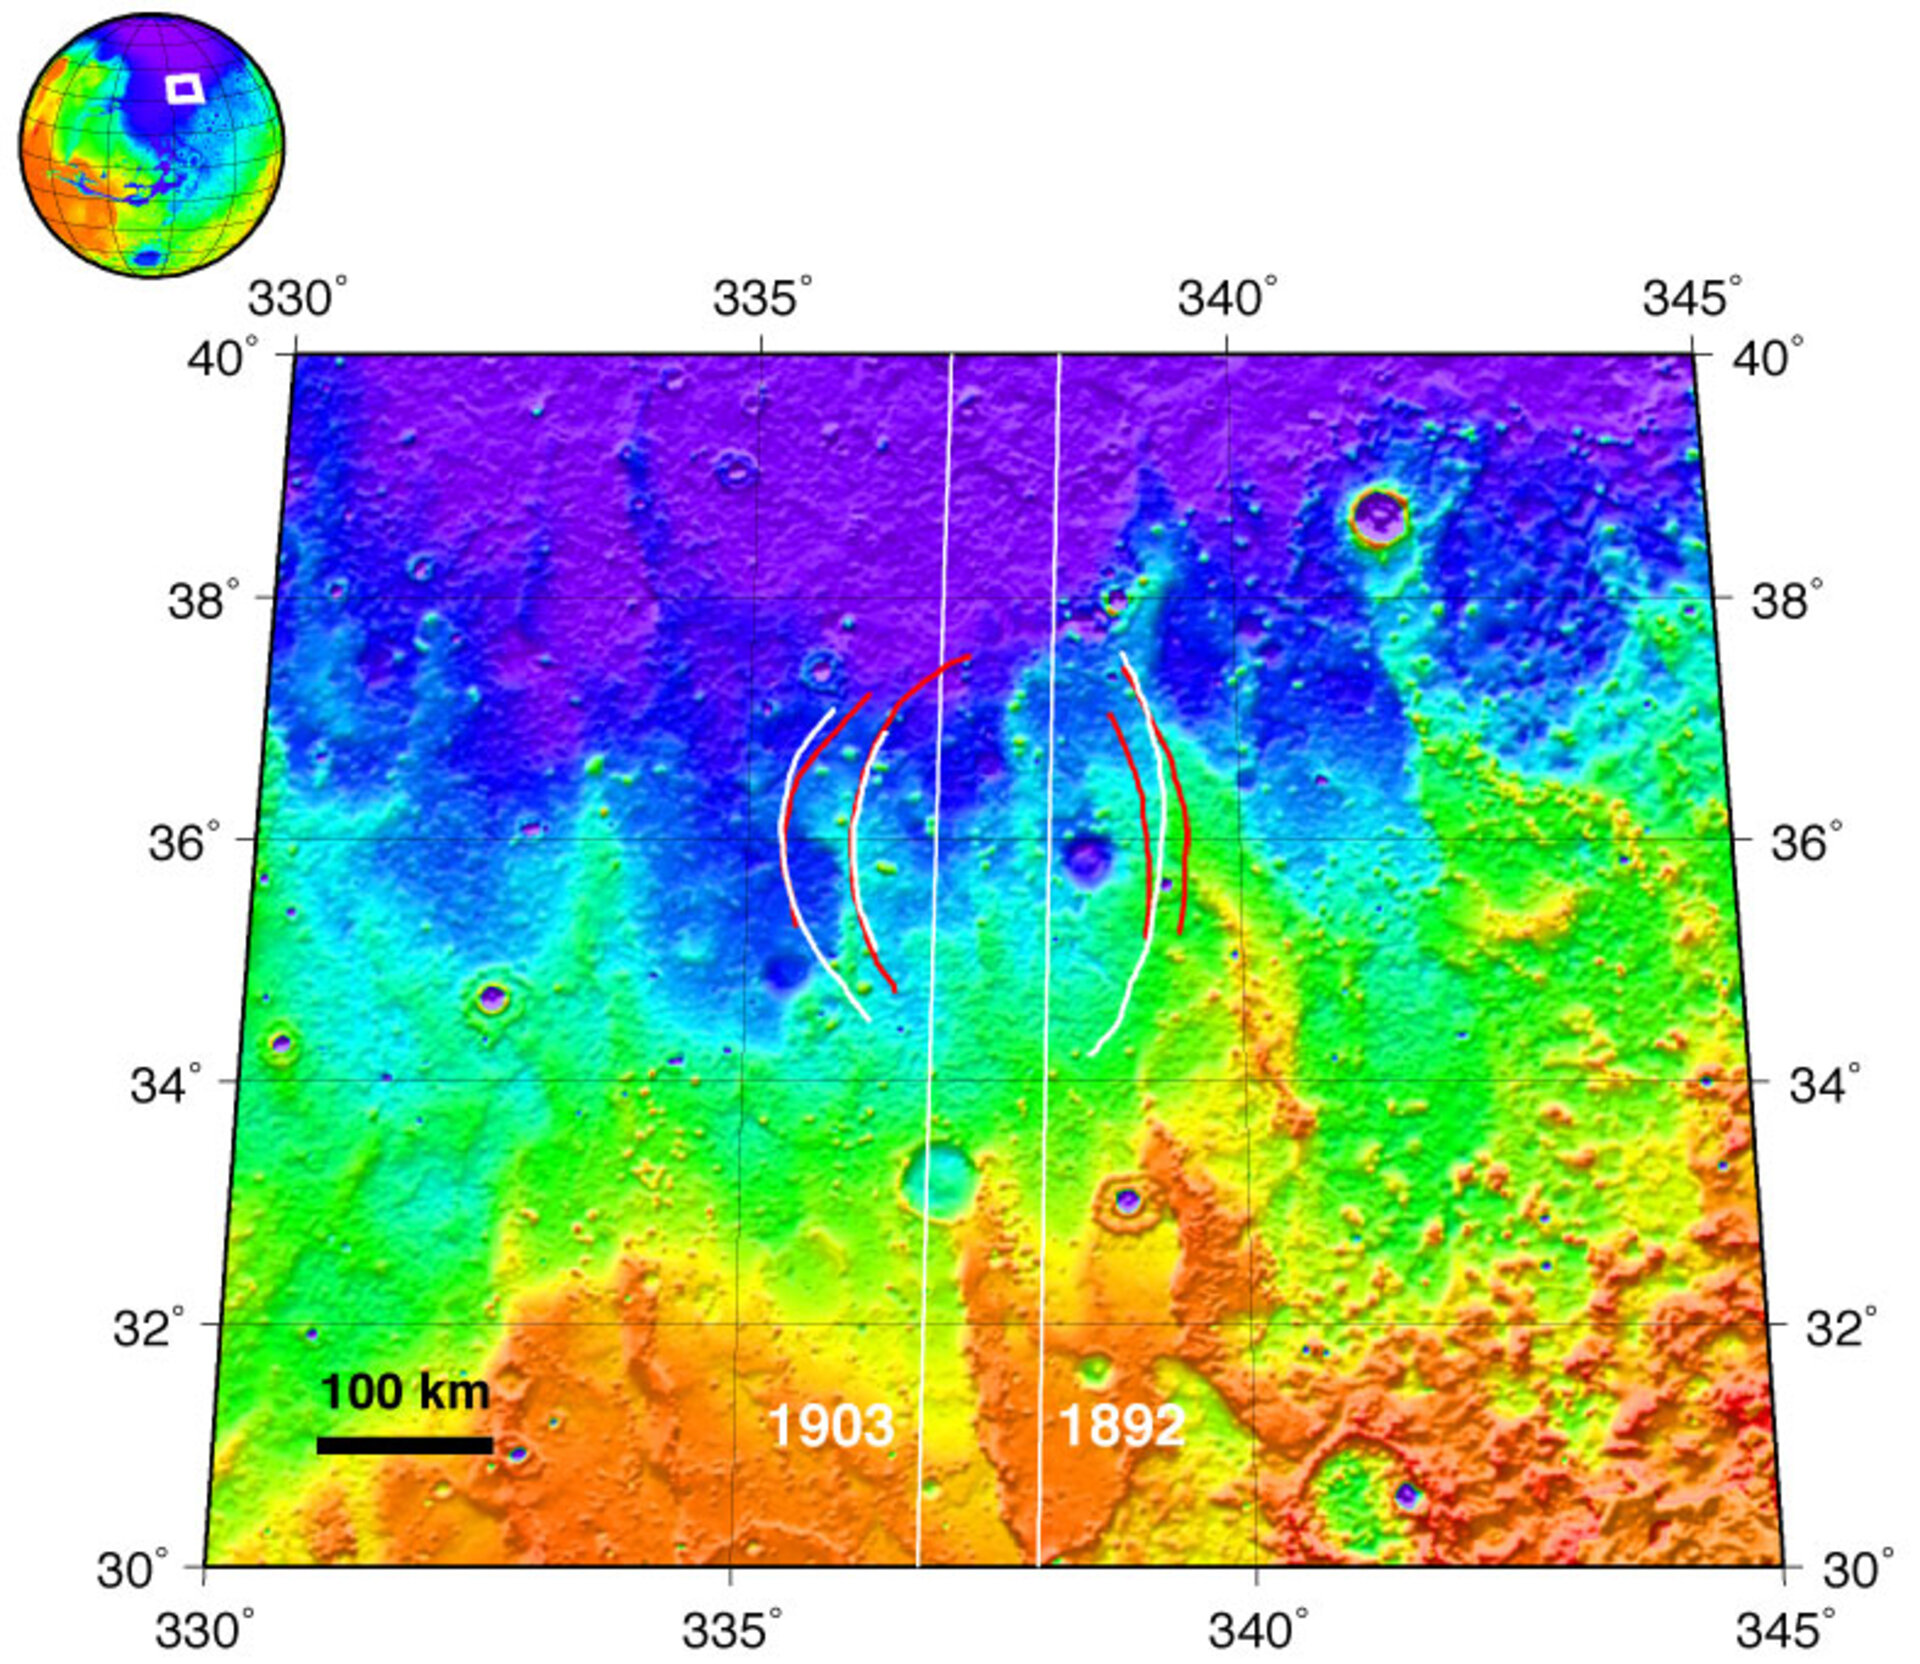 Midt i dette kort over Chryse Planita aner man omridset af det begravede krater.